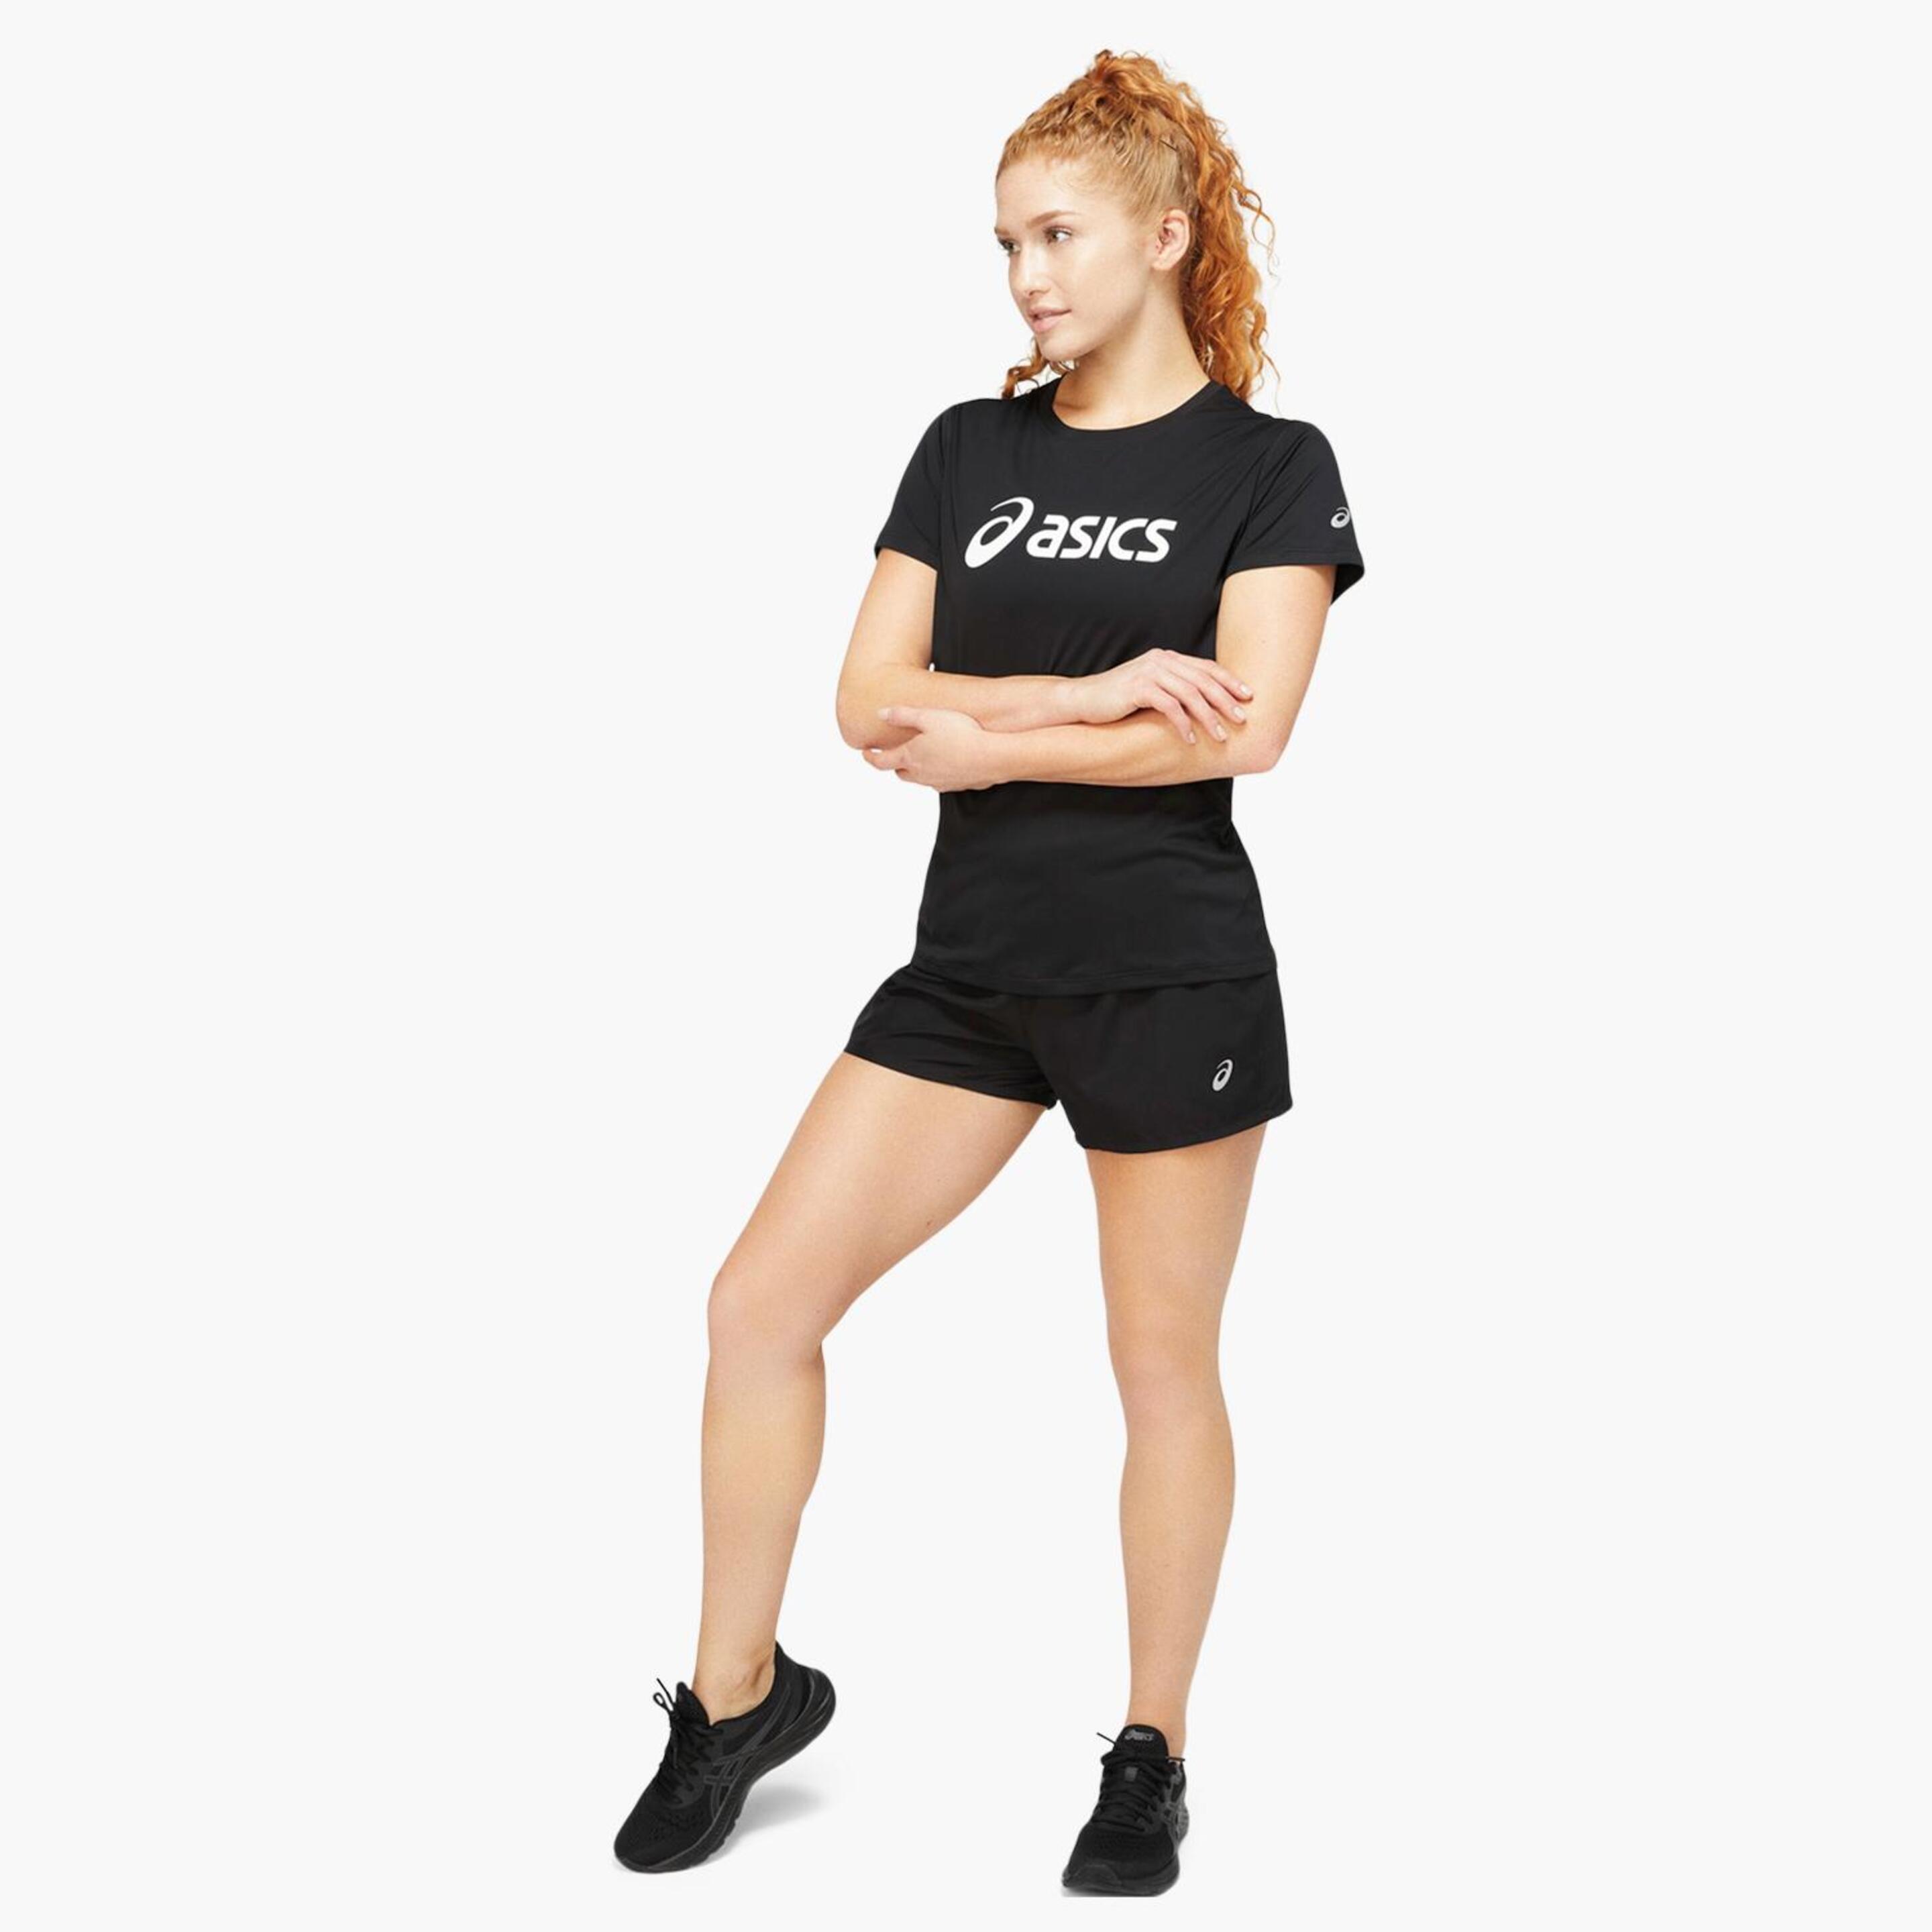 Asics Core Logo - Negra - Camiseta Running Mujer